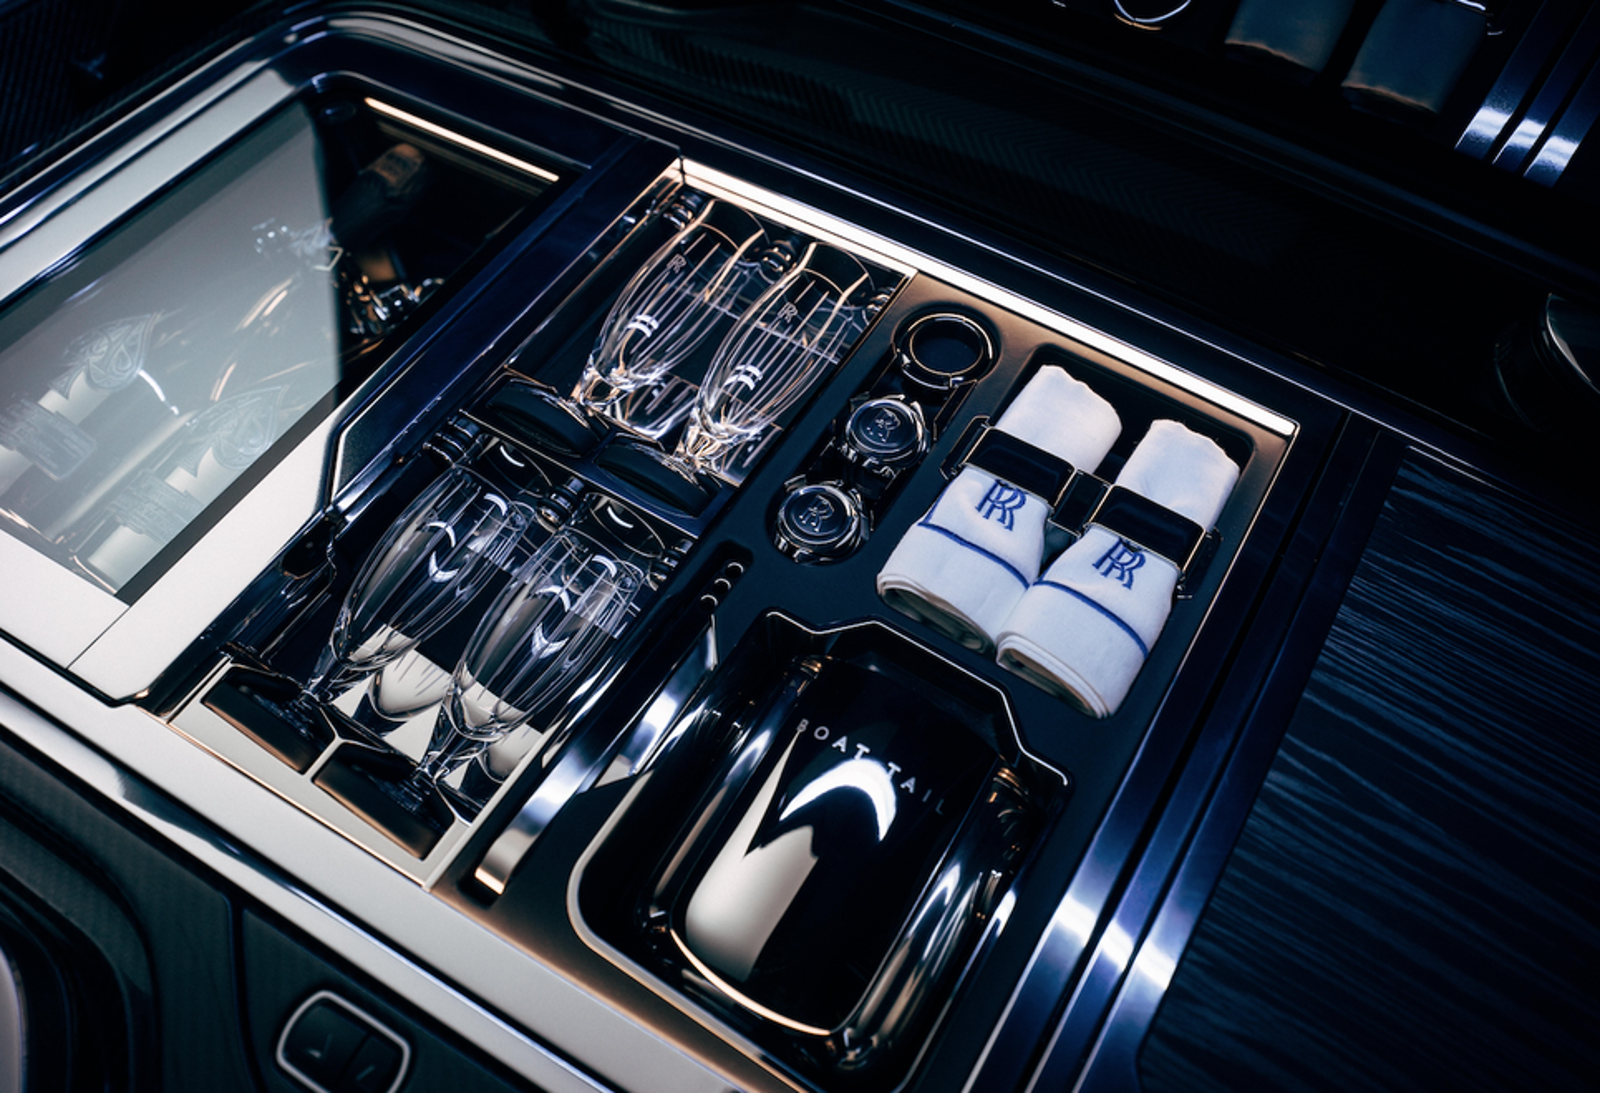 El automóvil más costoso del mundo es un Rolls-Royce con sombrillas en las y champán en el maletero | Internacional | Noticias | El Universo